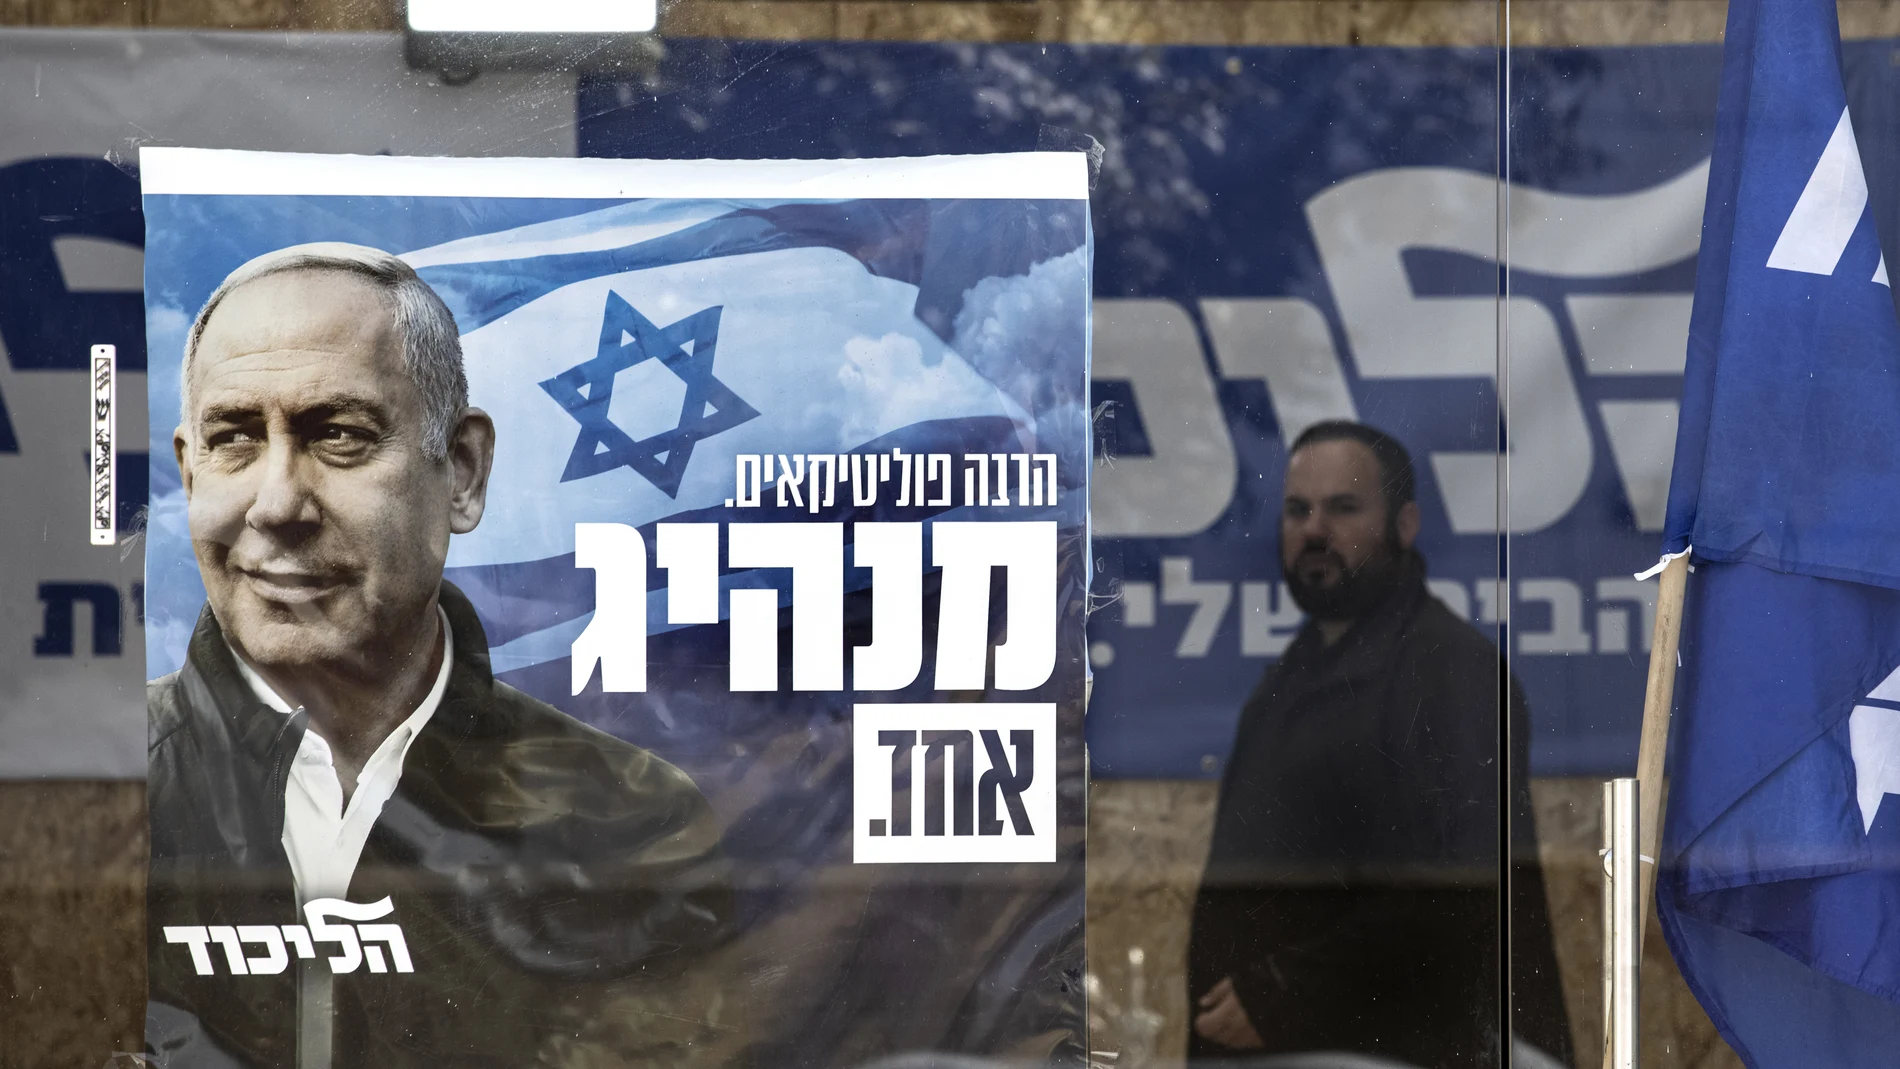 Un hombre pasa junto a un cartel de la campaña electoral del partido del primer ministro Benjamin Netanyahu en la ciudad de Sderot, Israel